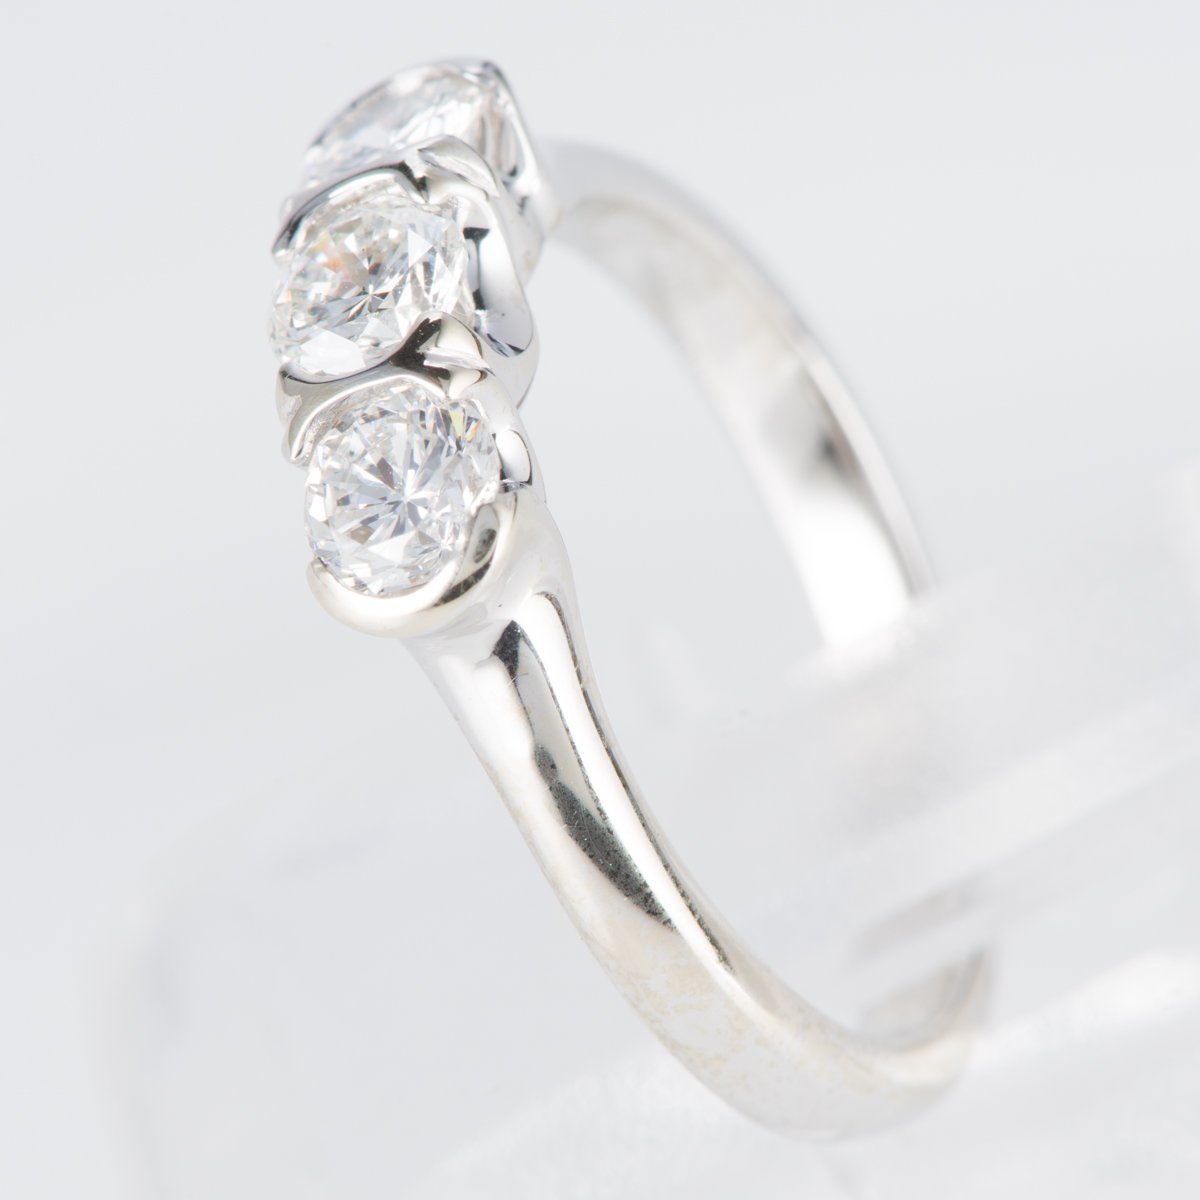 上品なダイヤモンド3石を使用したシンプルで合わせやすいデザインのホワイトゴールド製ダイヤモンドリング(D0.79ct K18WG)_画像4